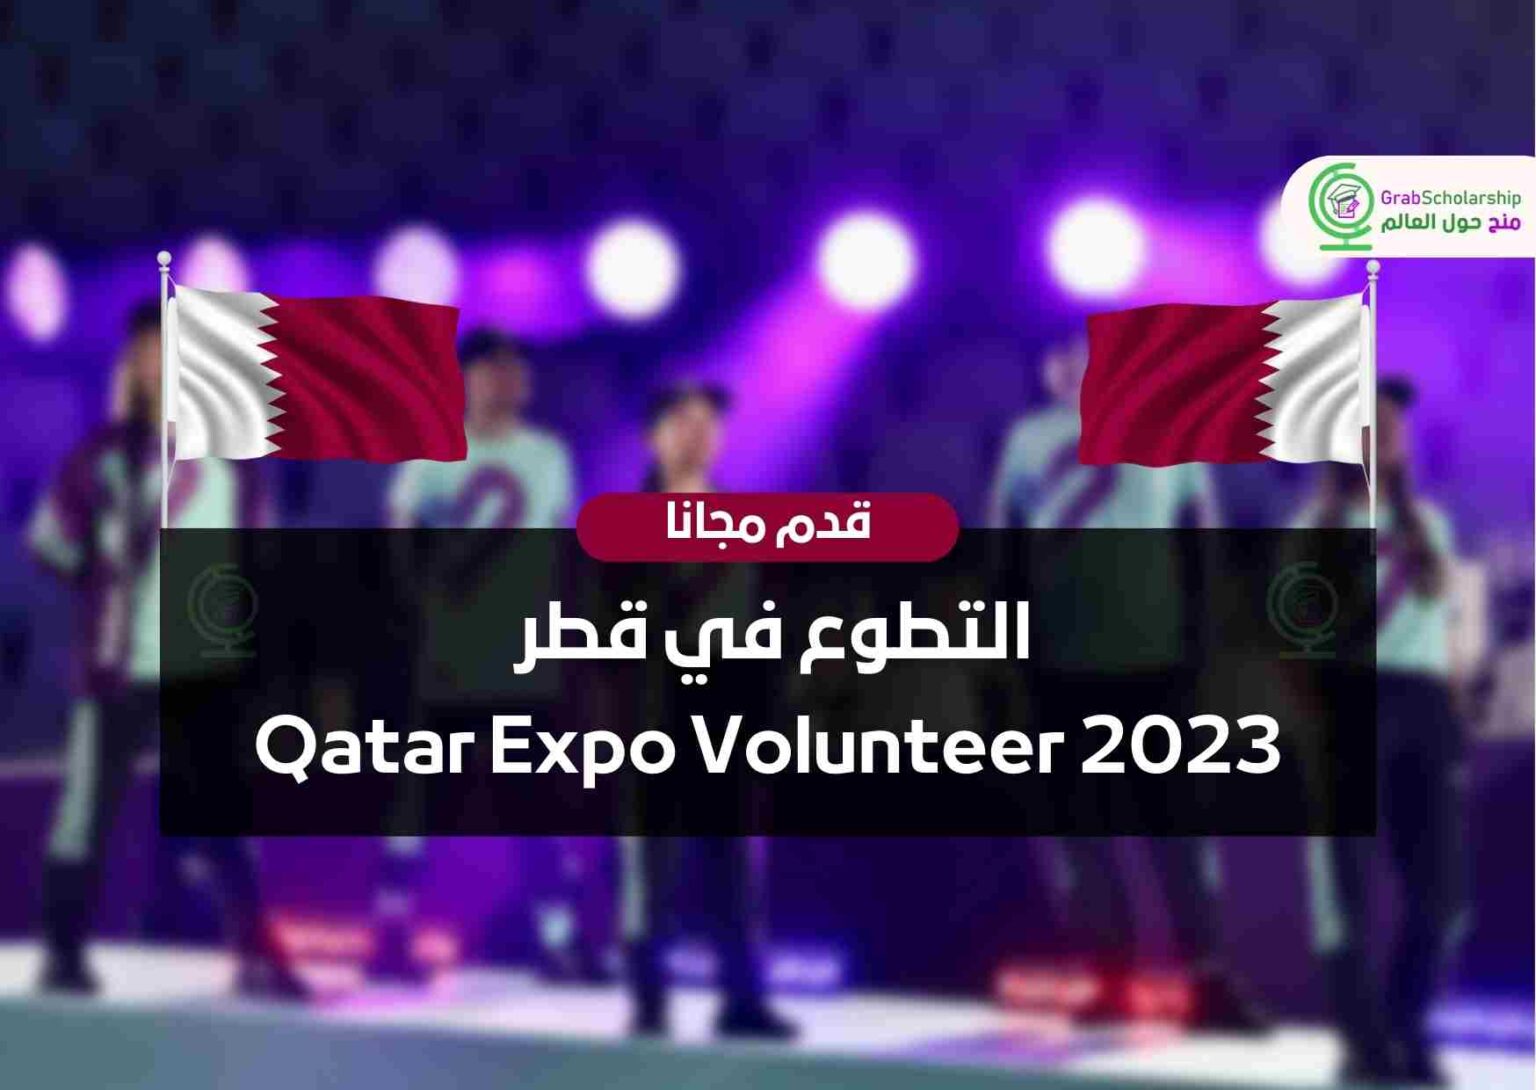 التطوع في قطر Qatar Expo Volunteer 2023 منح حول العالم